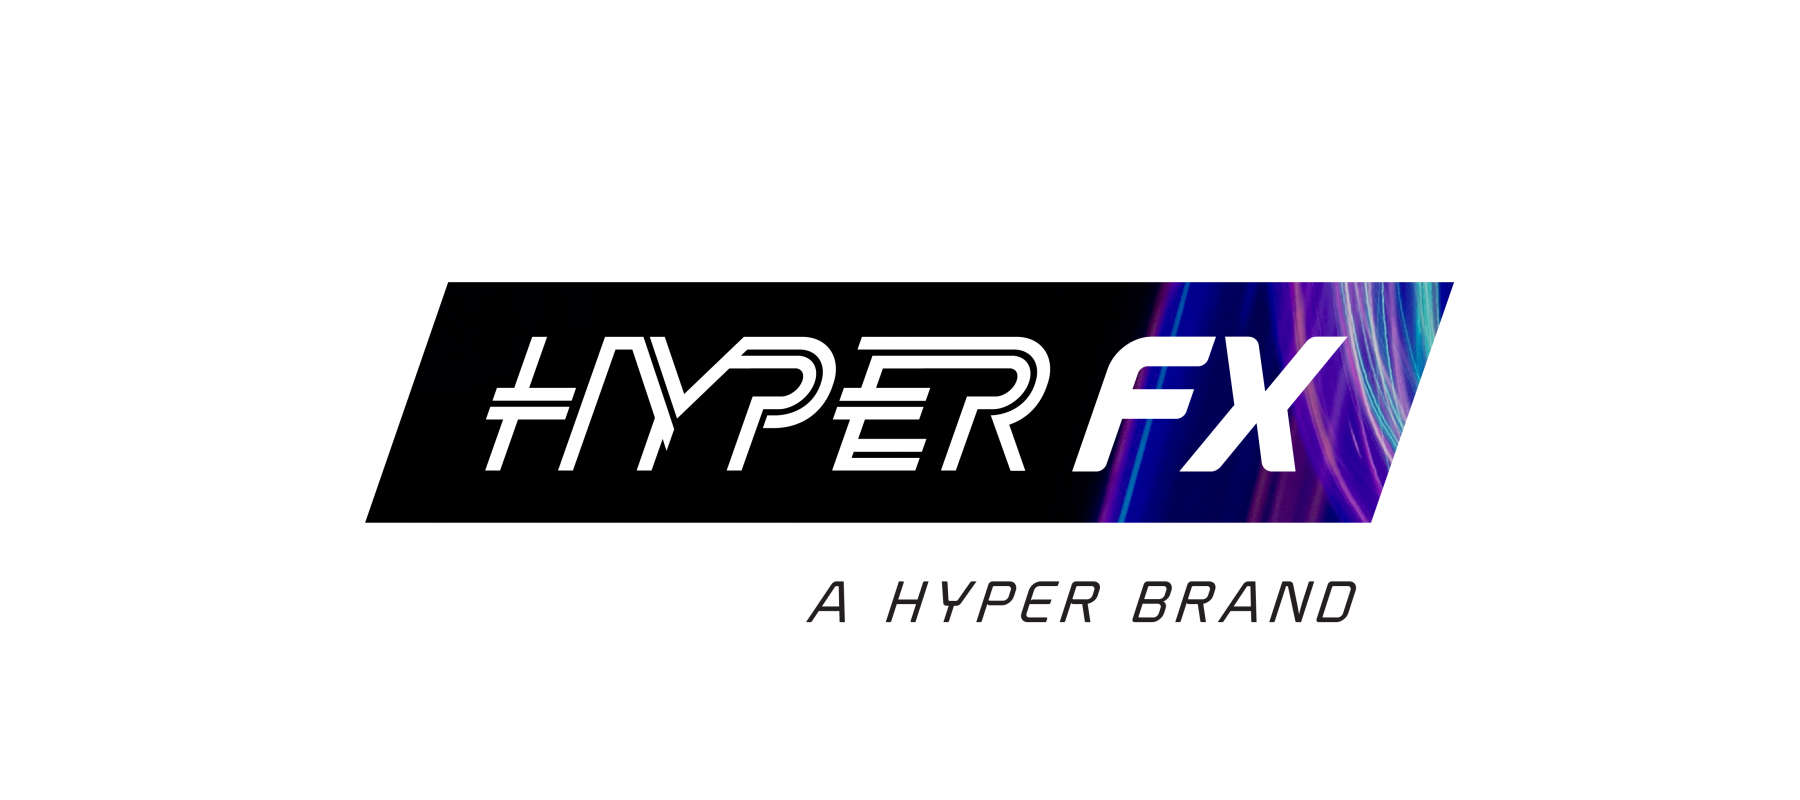 Hyper Brands 04